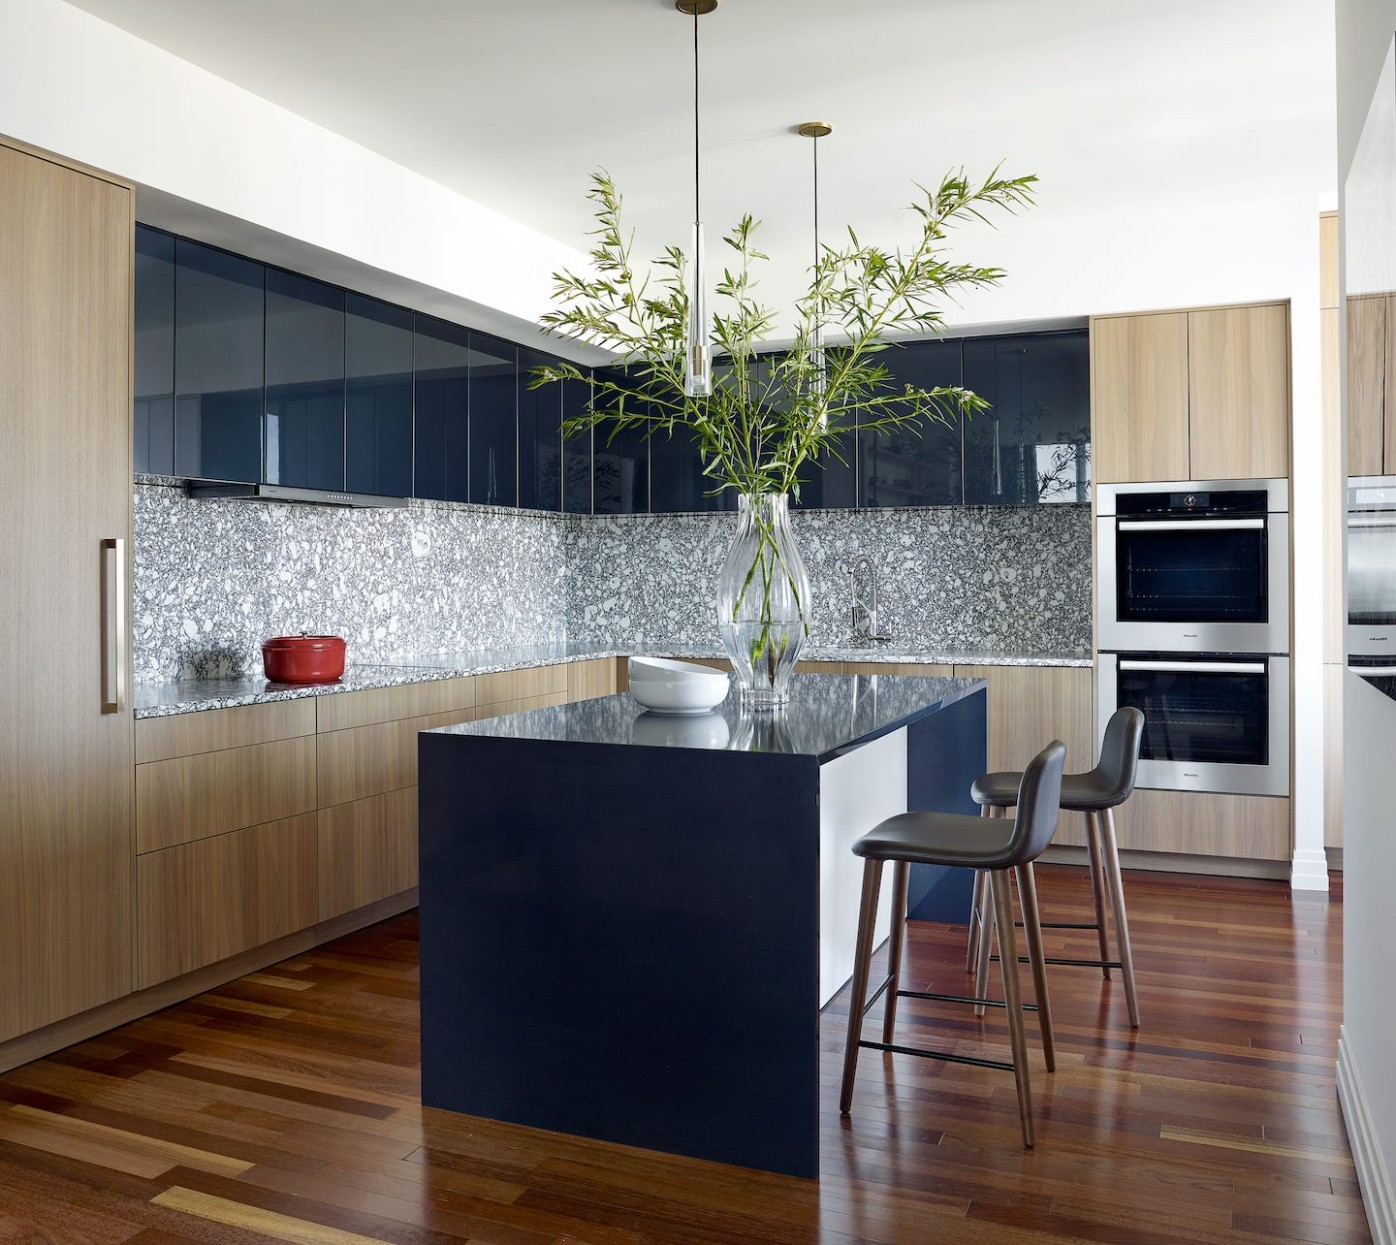 7 Best Modern Kitchens 7 - Modern Kitchen Design Ideas - latest kitchen images